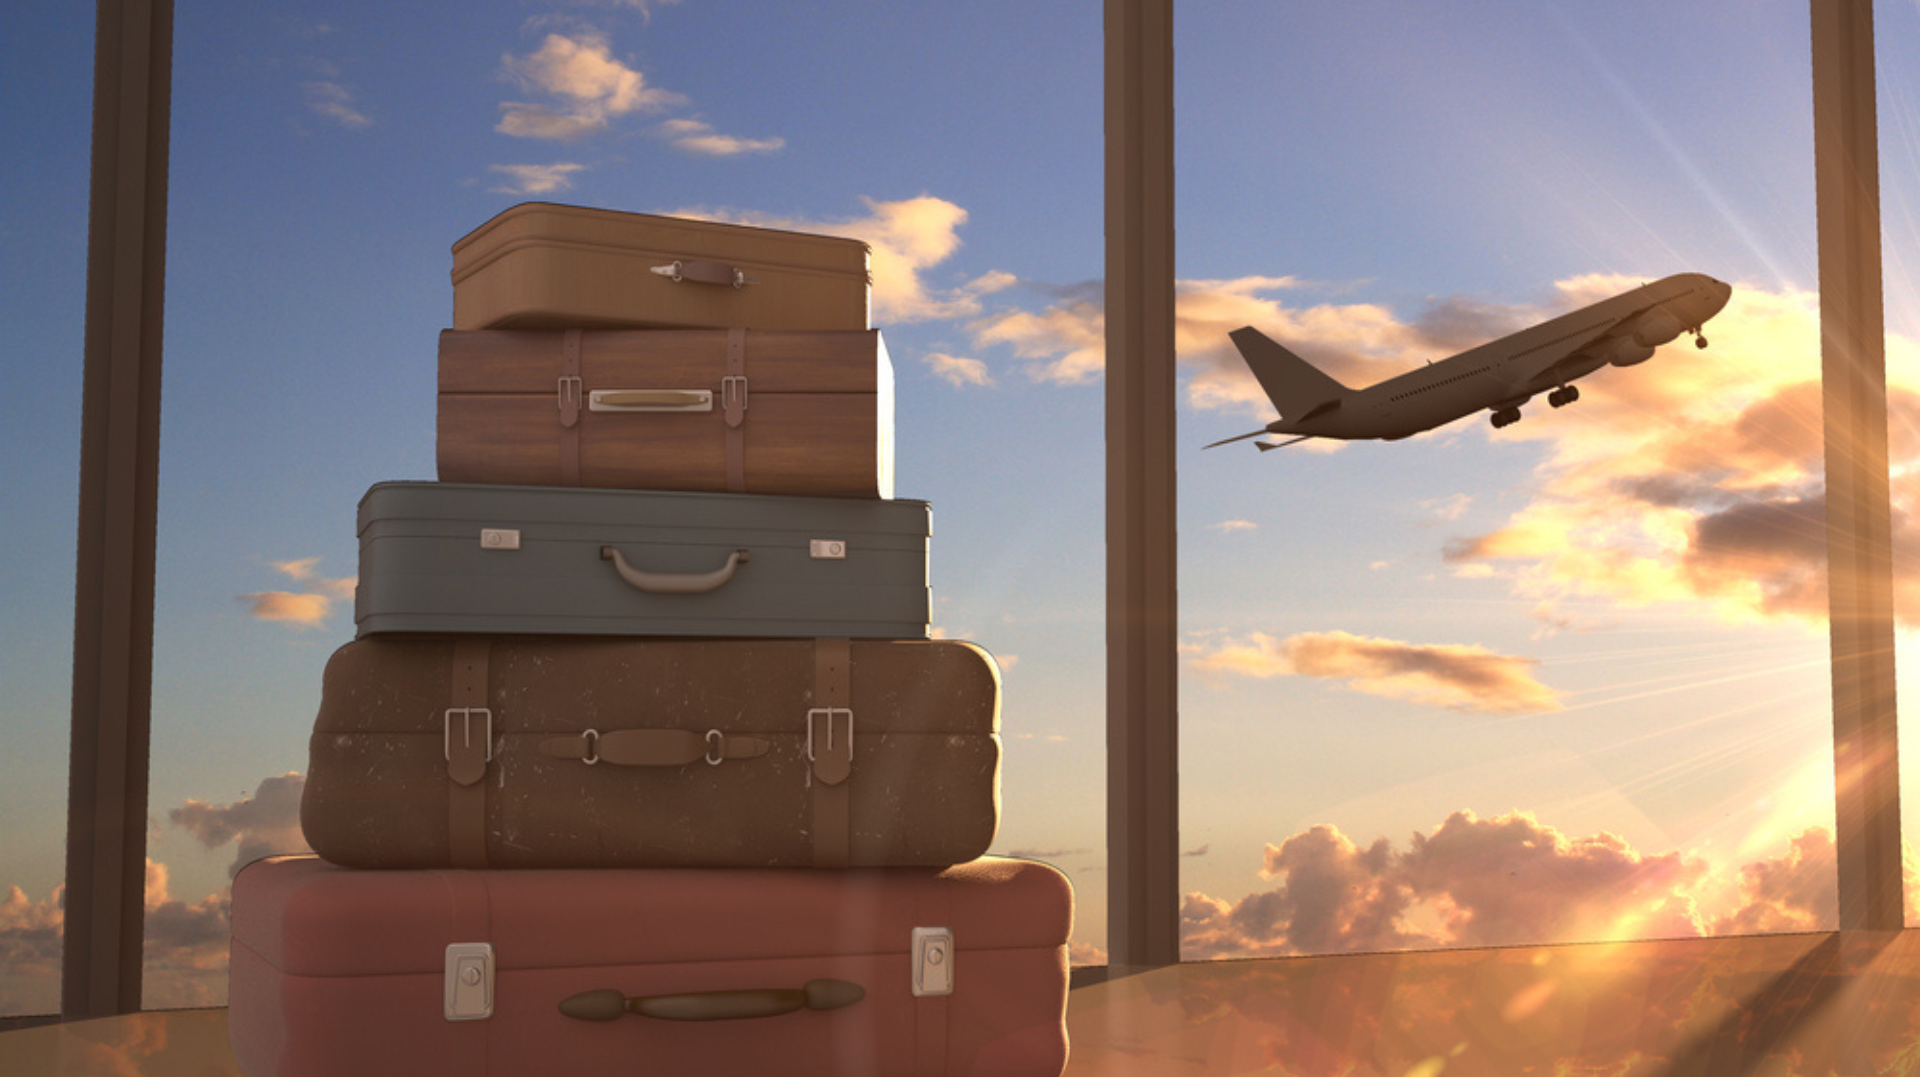 Mala de viagem: dicas para montar a bagagem perfeita para o inverno | Malas de viagem e avião decolando | Conexão123